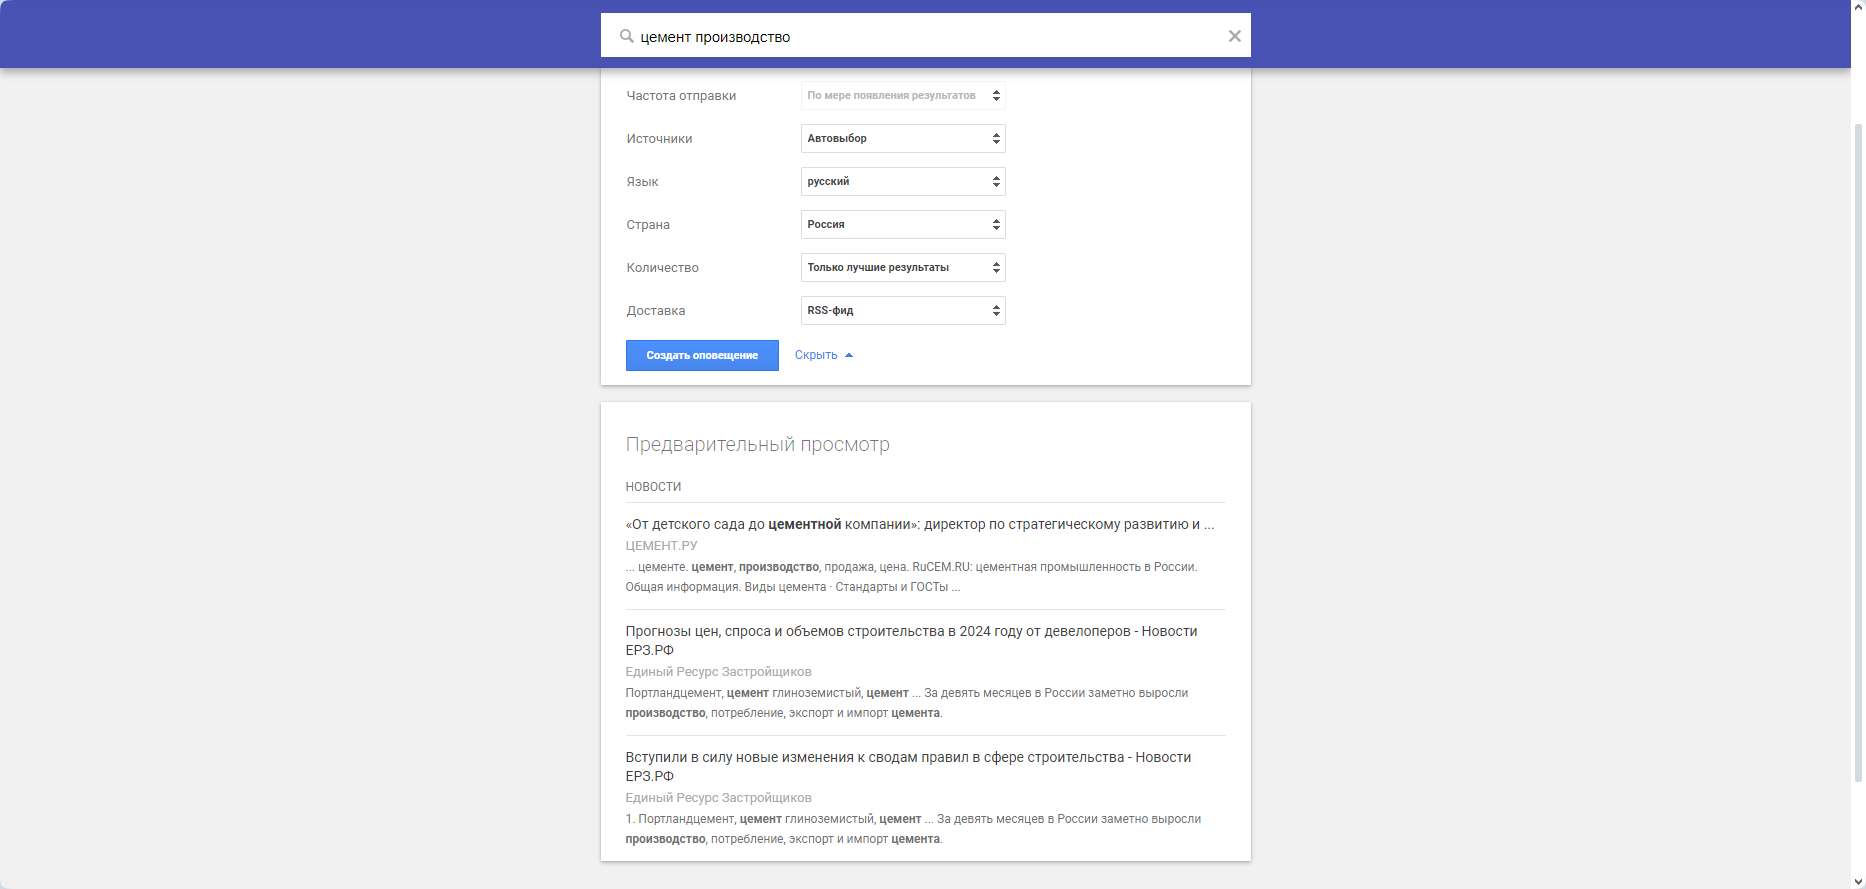 Например, Google Alerts по запросу «цемент производство» выдал только три результата на Россию
